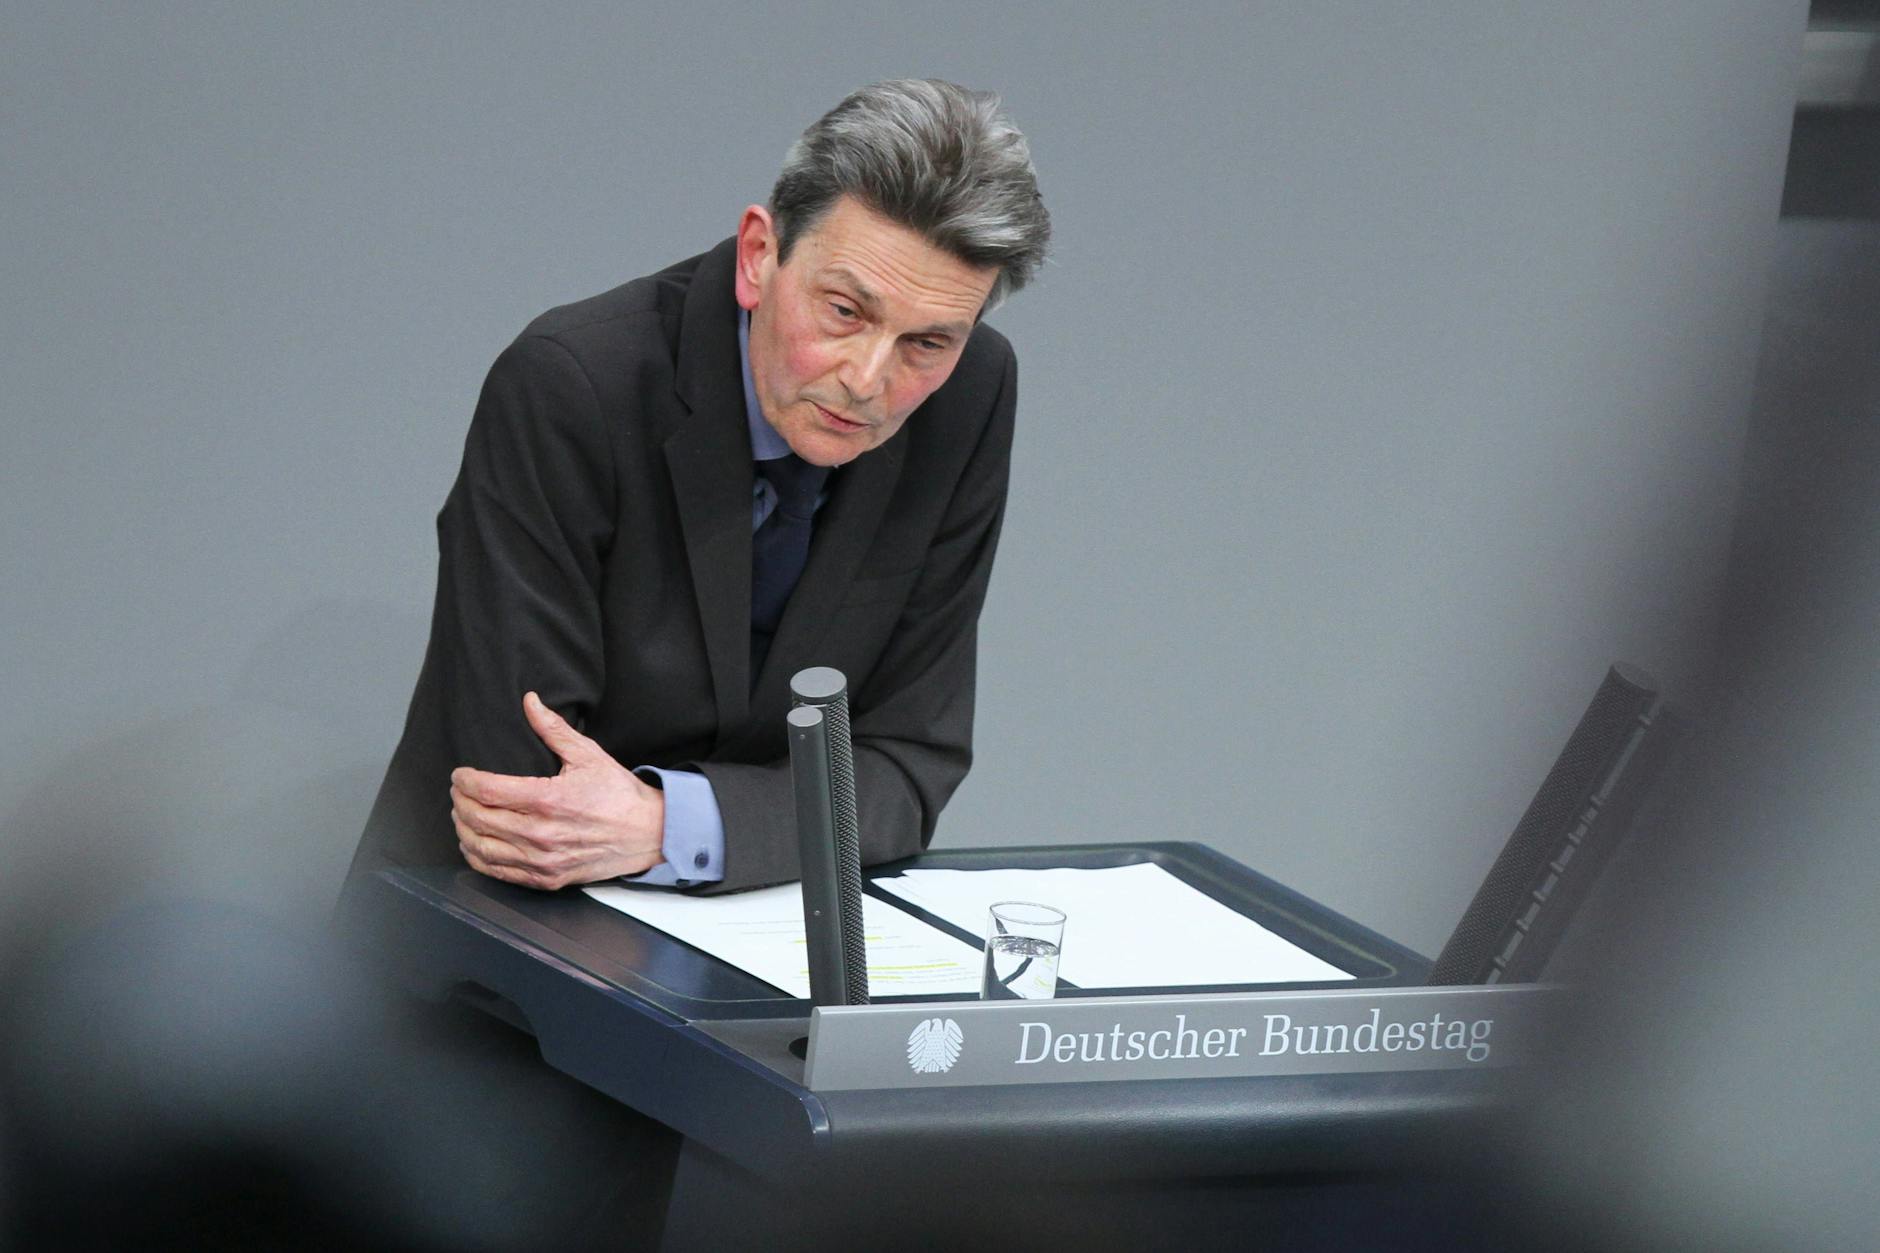 Wer sagt, was er nicht denkt, führt in die Irre. Aber verschweigen, was man denkt, führt zu nichts. Rolf Mützenich in der Taurus-Debatte am 14. März im Bundestag.